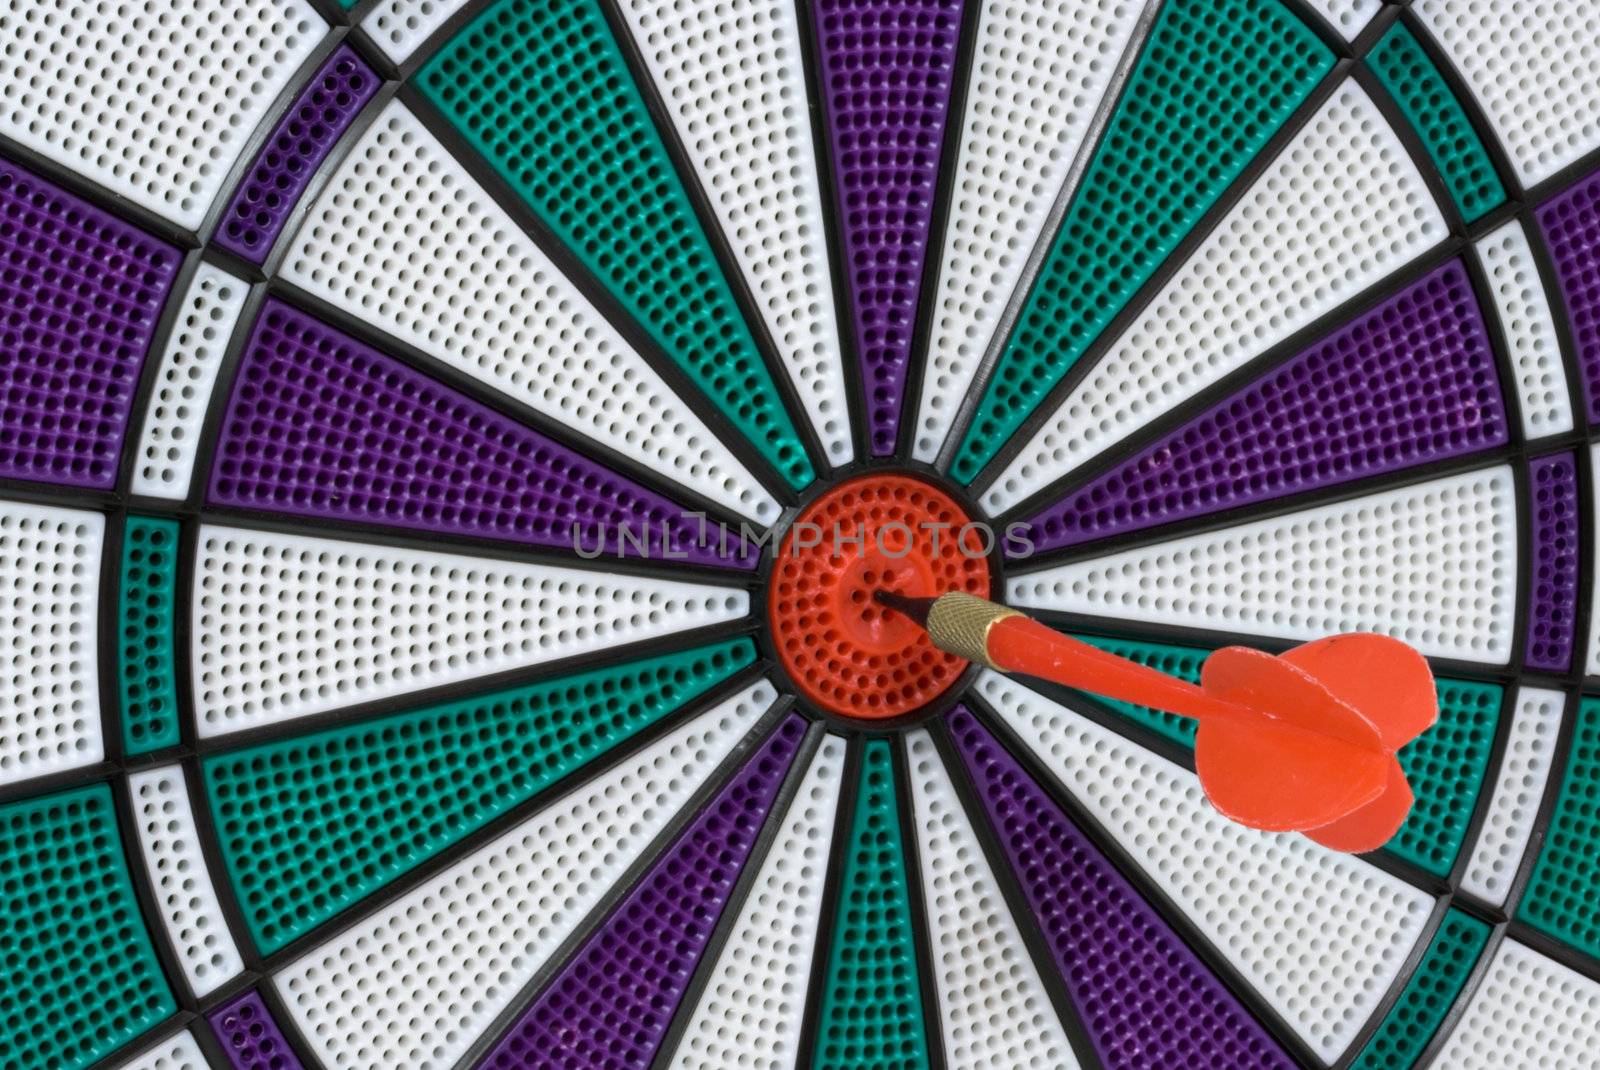 Dartboard with dart in center (bullseye)